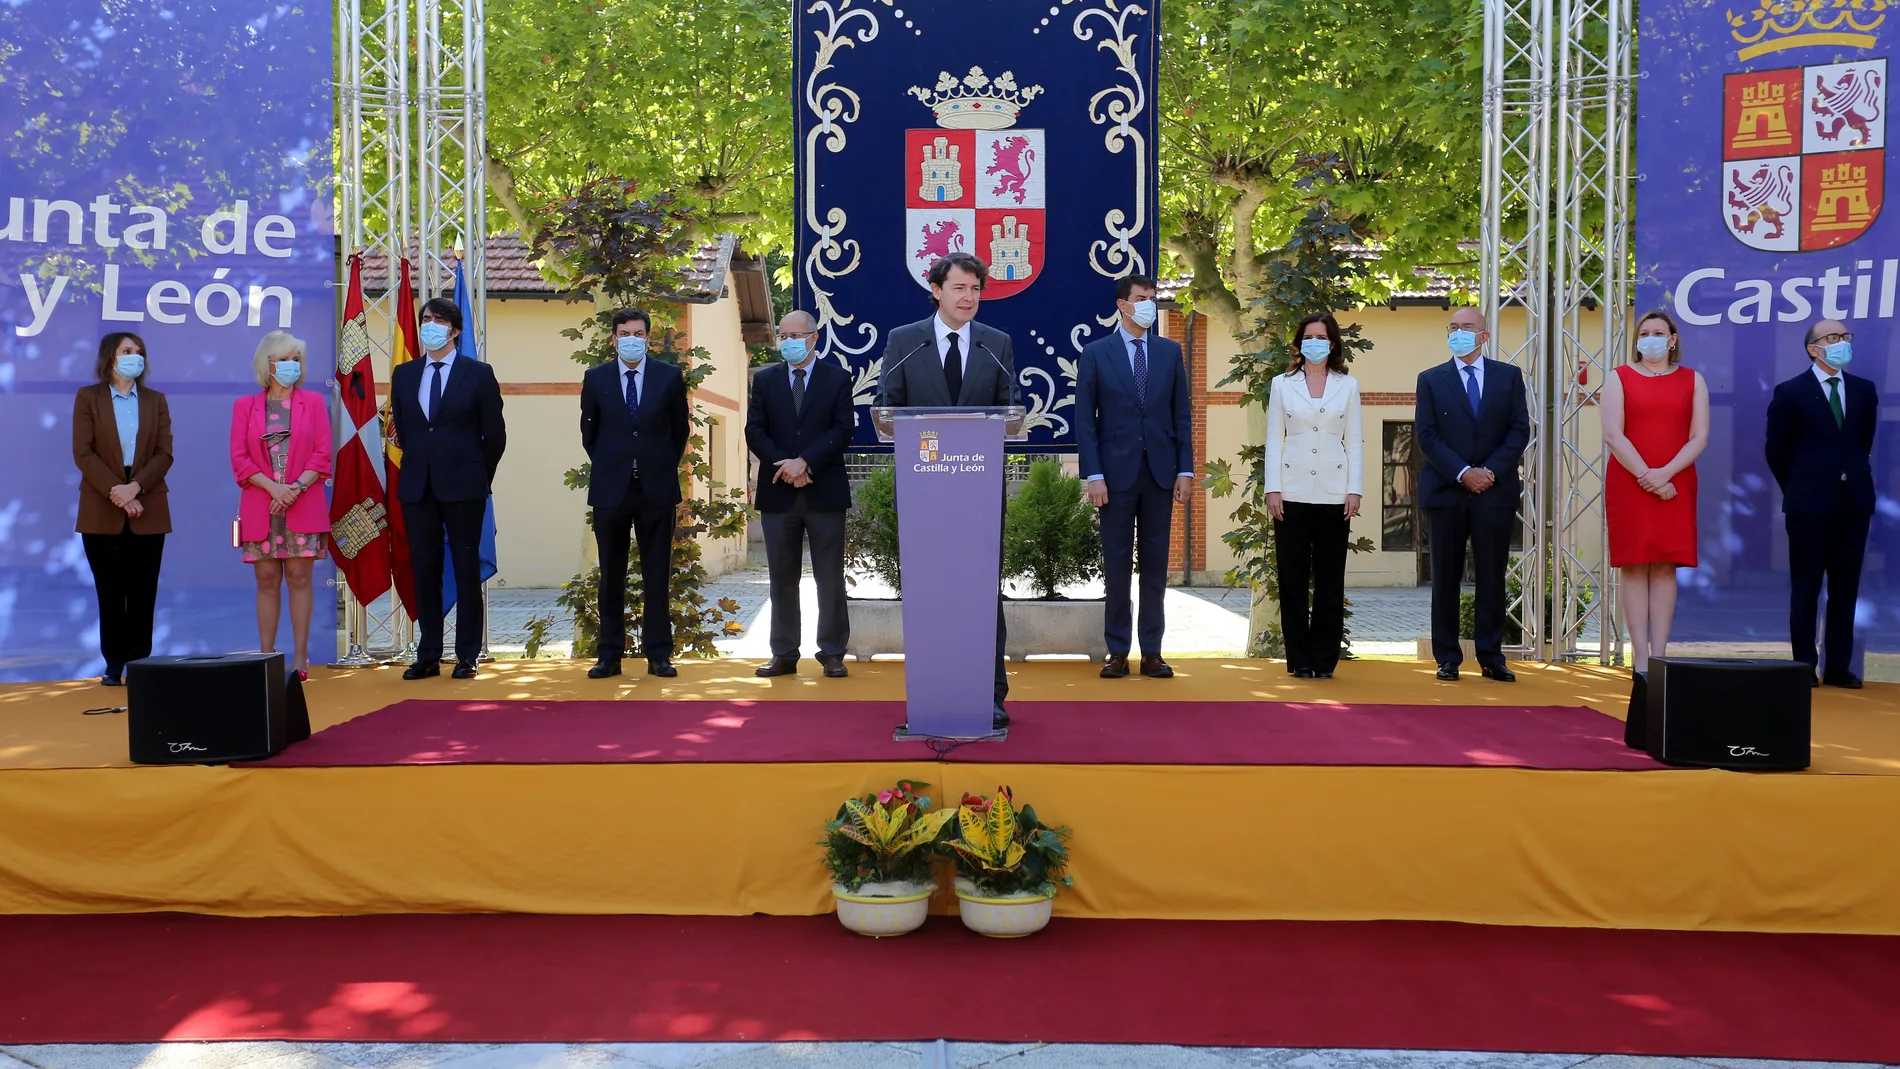 El presidente Alfonso Fernández Mañueco junto al resto de miembros del Gobierno regional